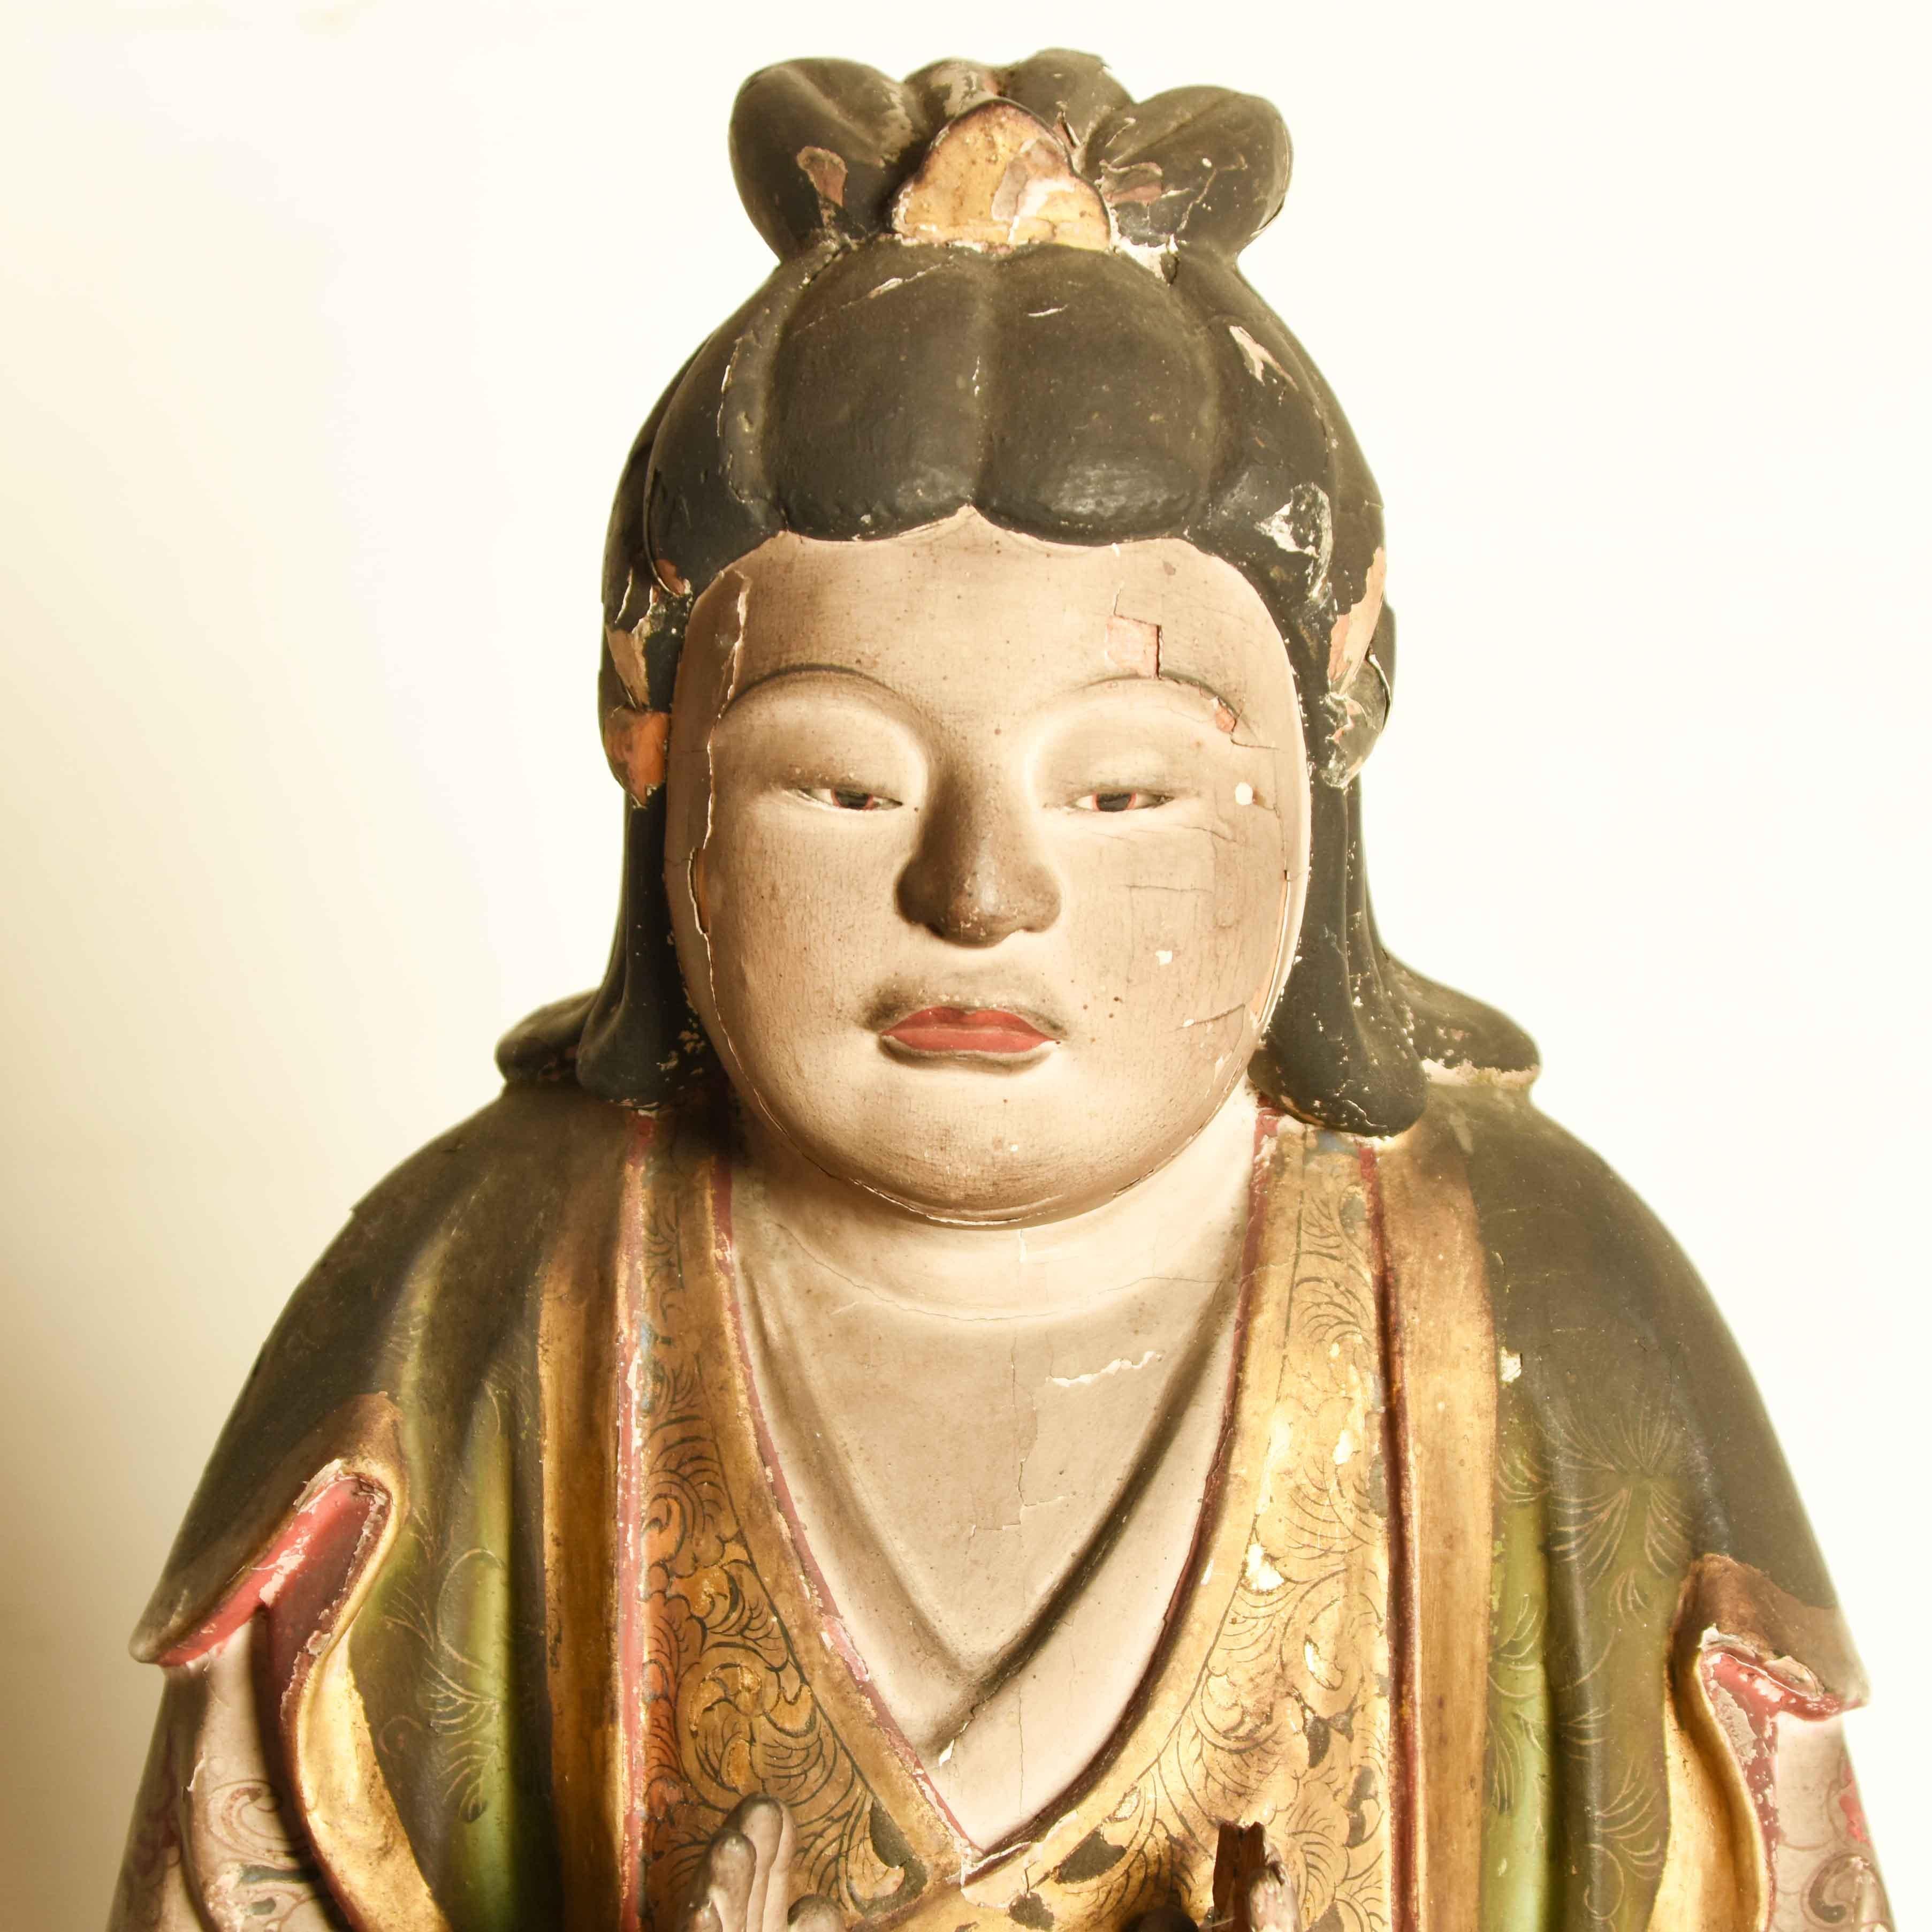 Eine japanische Statue eines Shinto-Gottes aus der Momoyama-Periode. Handgeschnitzt aus Holz mit einer Gesso-Schicht und handbemalt mit fließenden Gewändern mit fein gearbeiteten, farbenfrohen Mustern, darunter ein Lotus auf der mittleren Tafel. Die